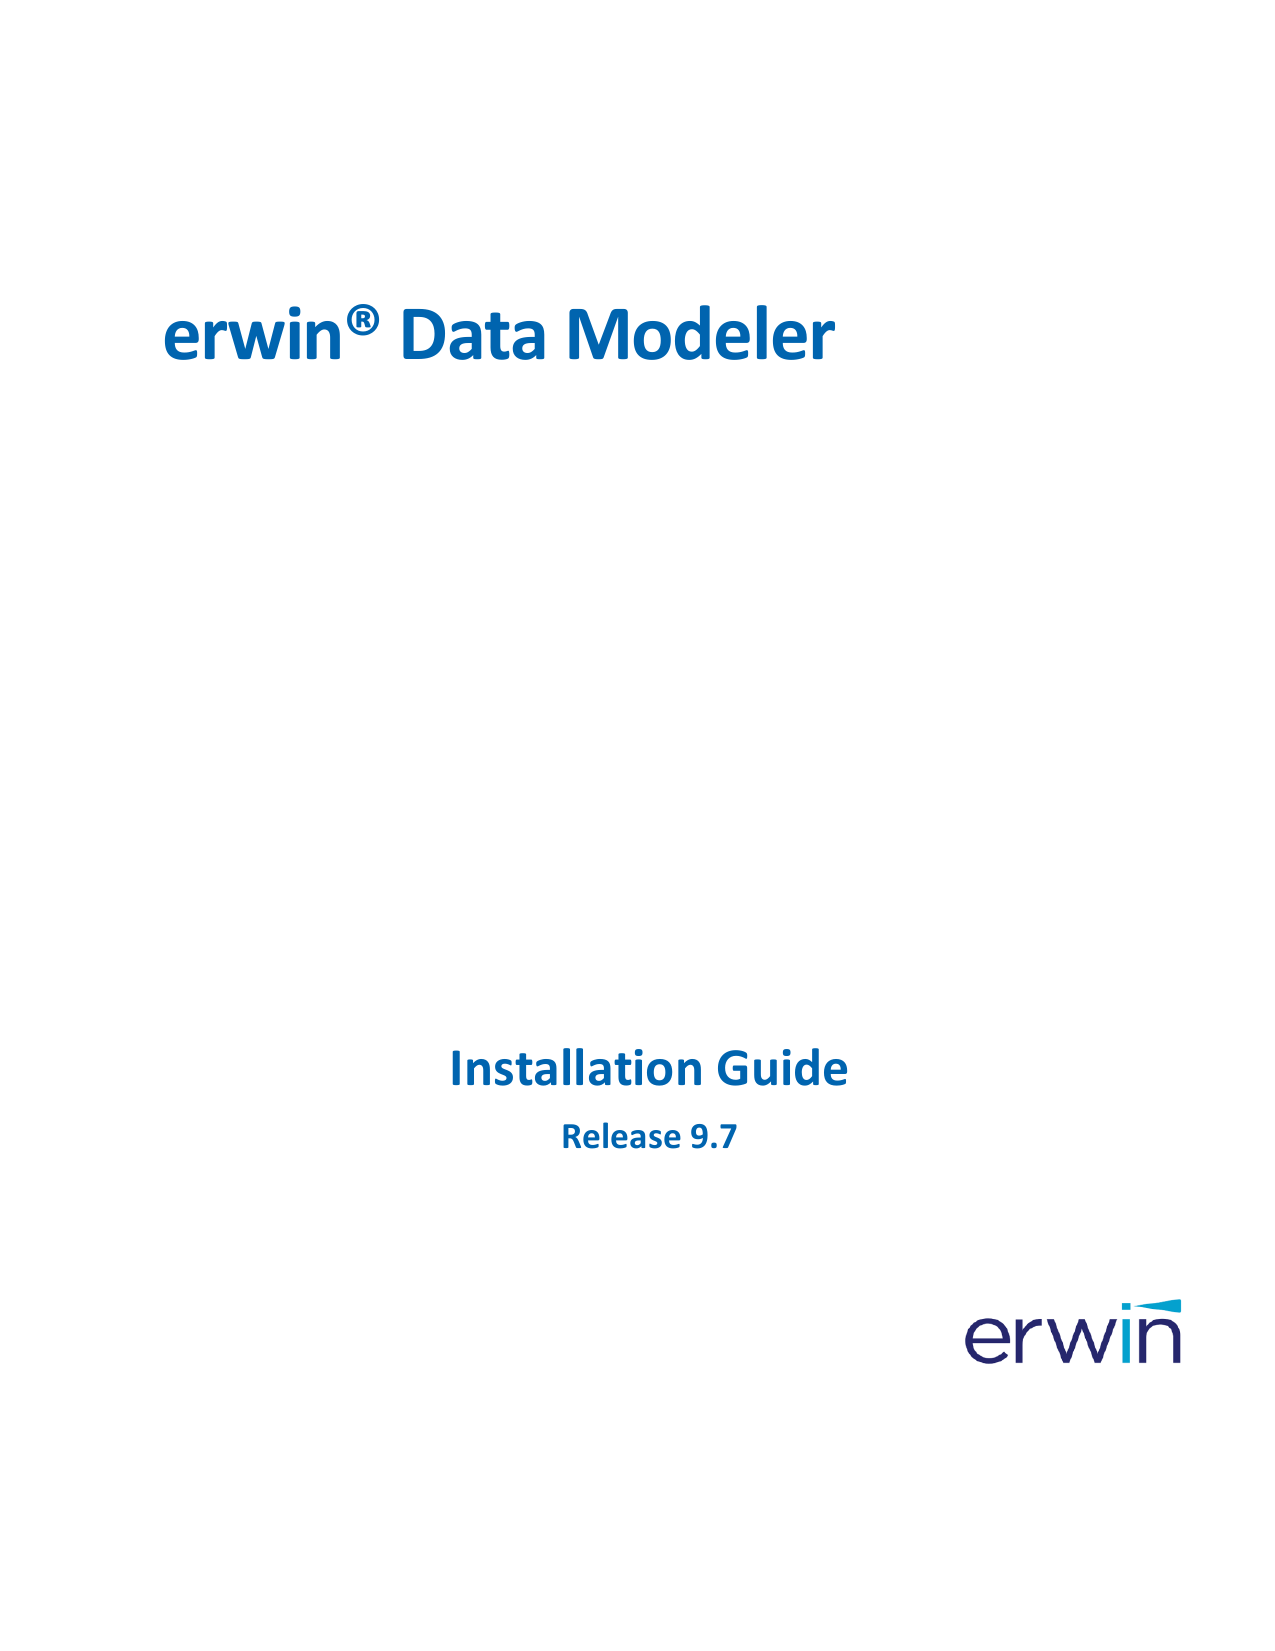 erwin data modeler license file